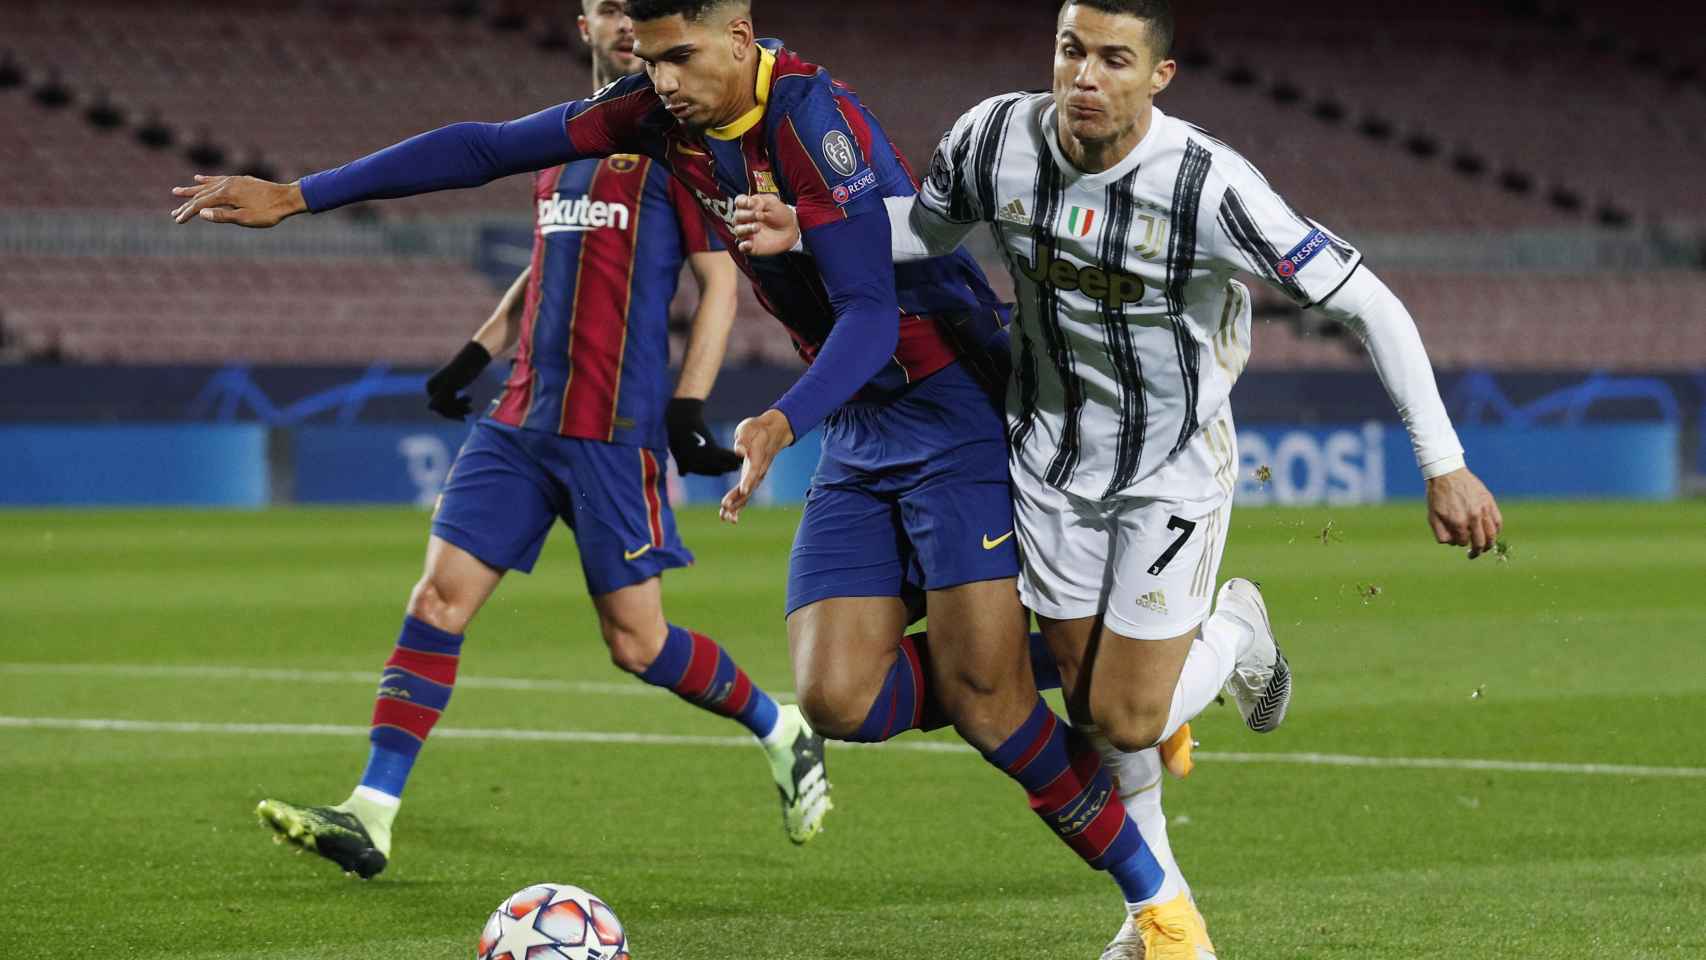 Contacto entre Araujo y Cristiano Ronaldo por el que pitaron penalti